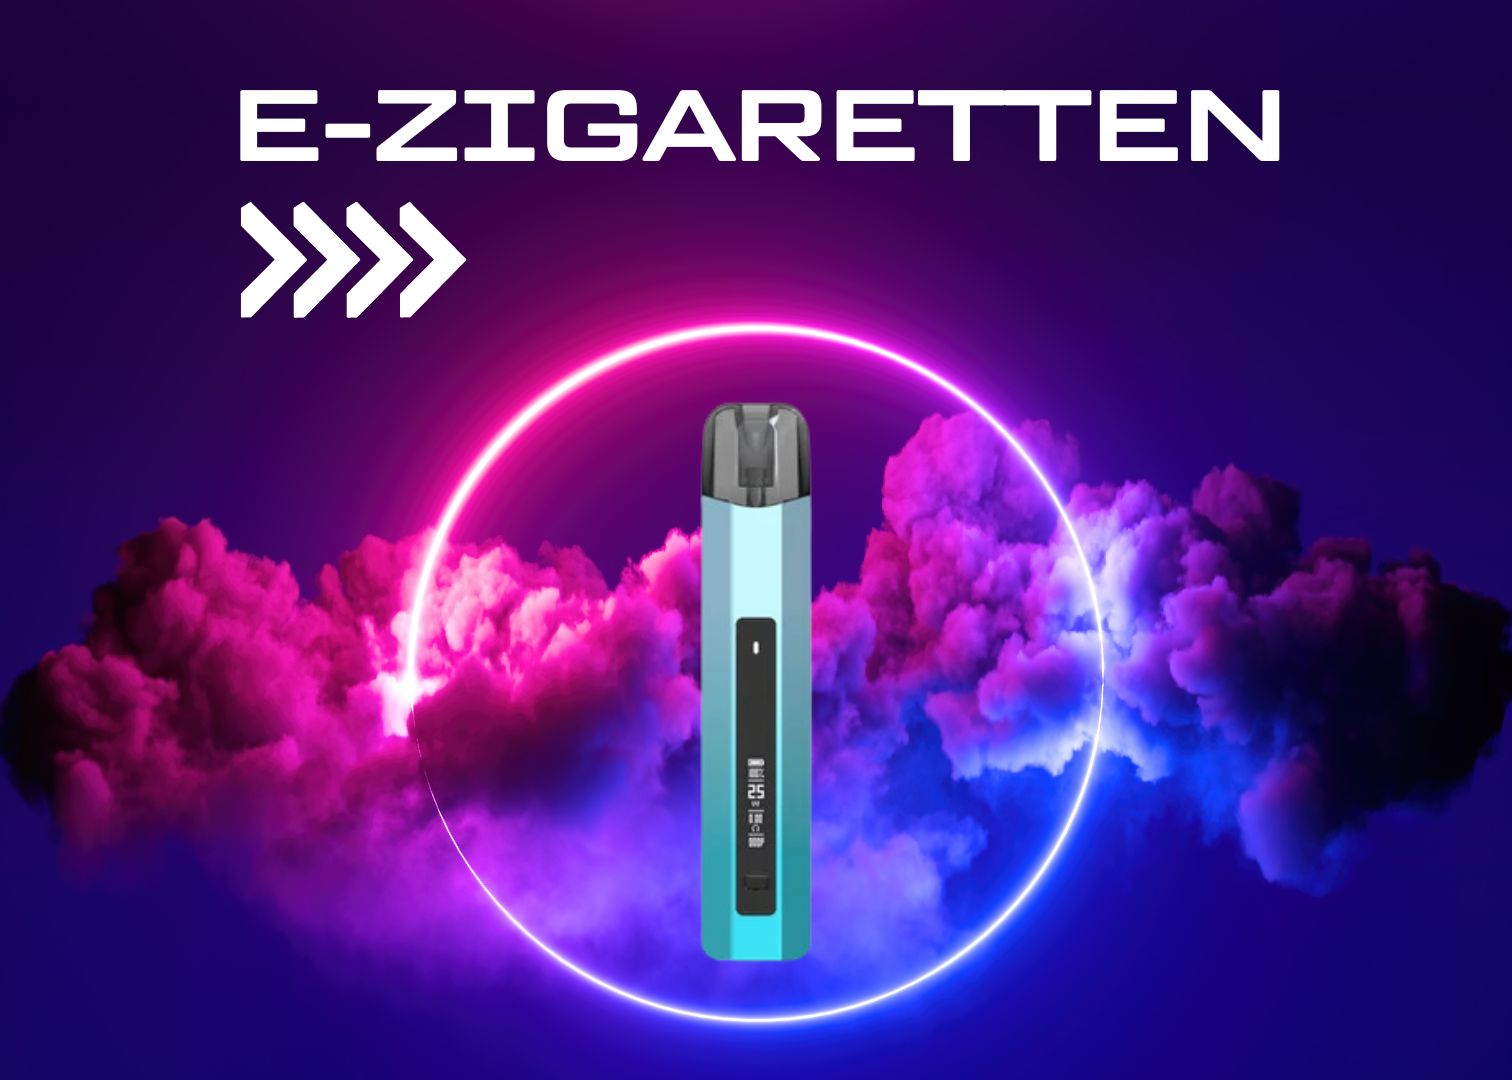 E-Zigaretten